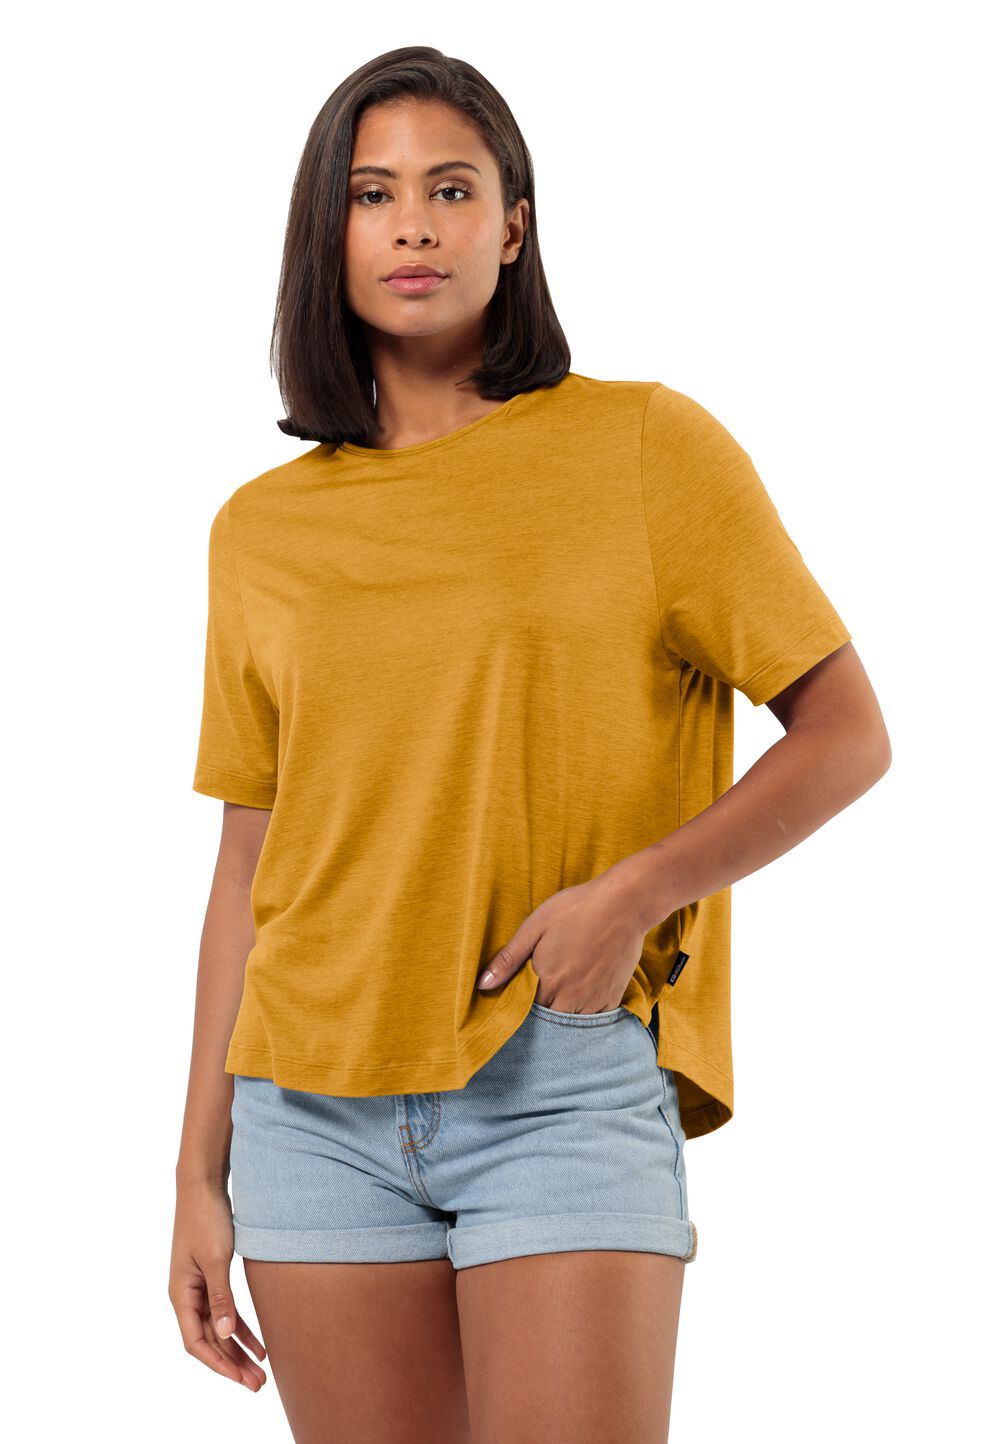 Jack Wolfskin Travel T-Shirt Women Functioneel shirt Dames XXL bruin curry